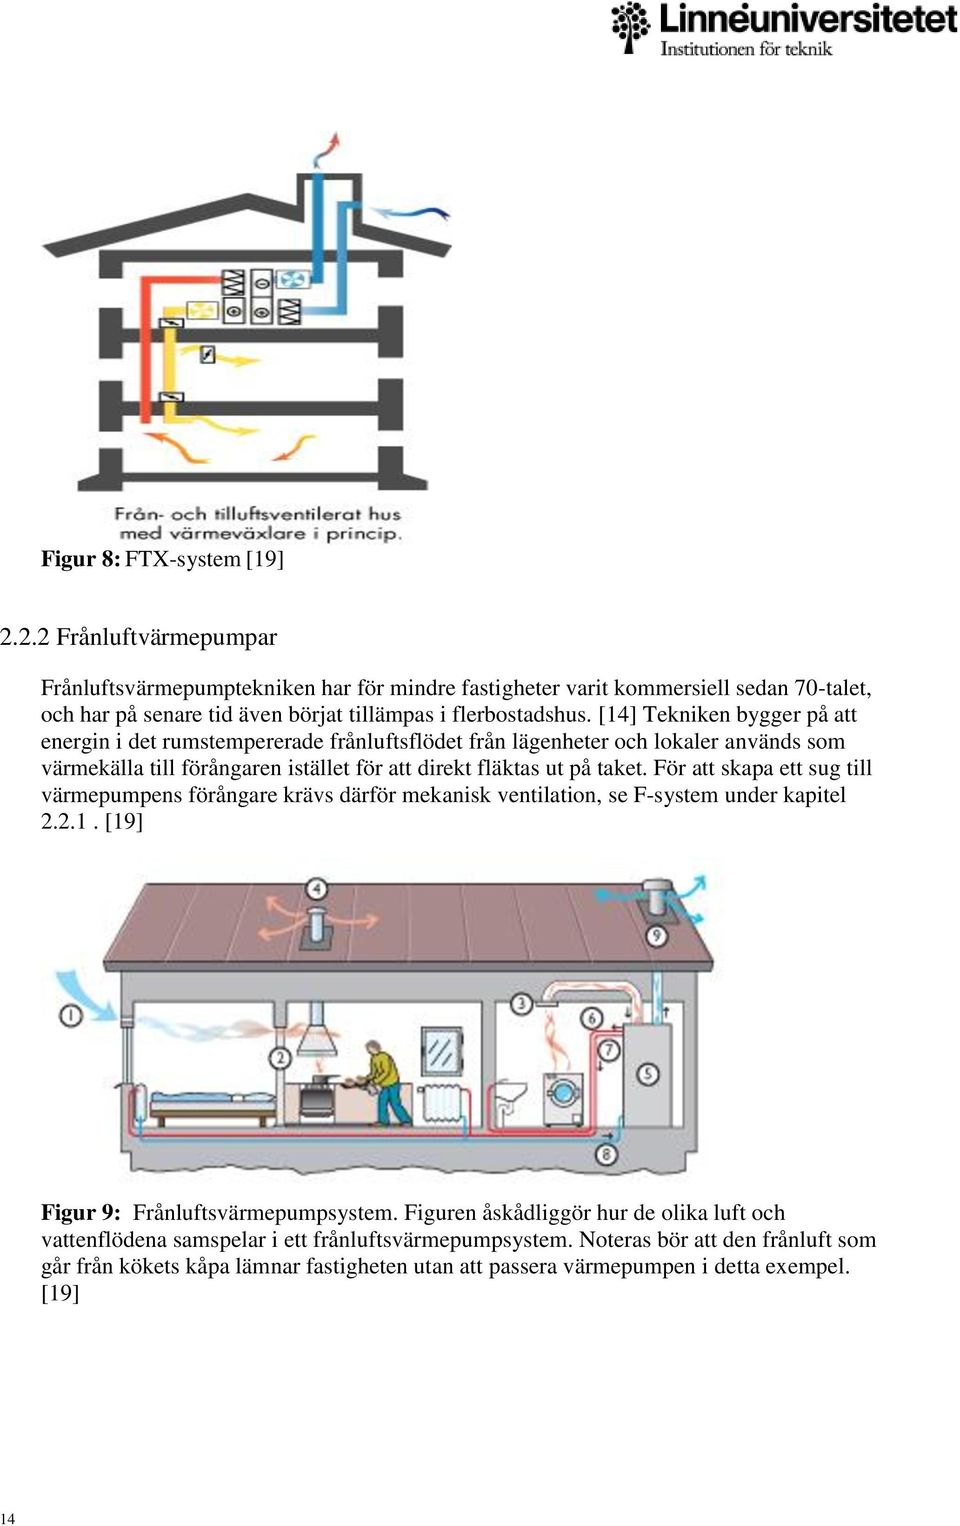 [14] Tekniken bygger på att energin i det rumstempererade frånluftsflödet från lägenheter och lokaler används som värmekälla till förångaren istället för att direkt fläktas ut på taket.